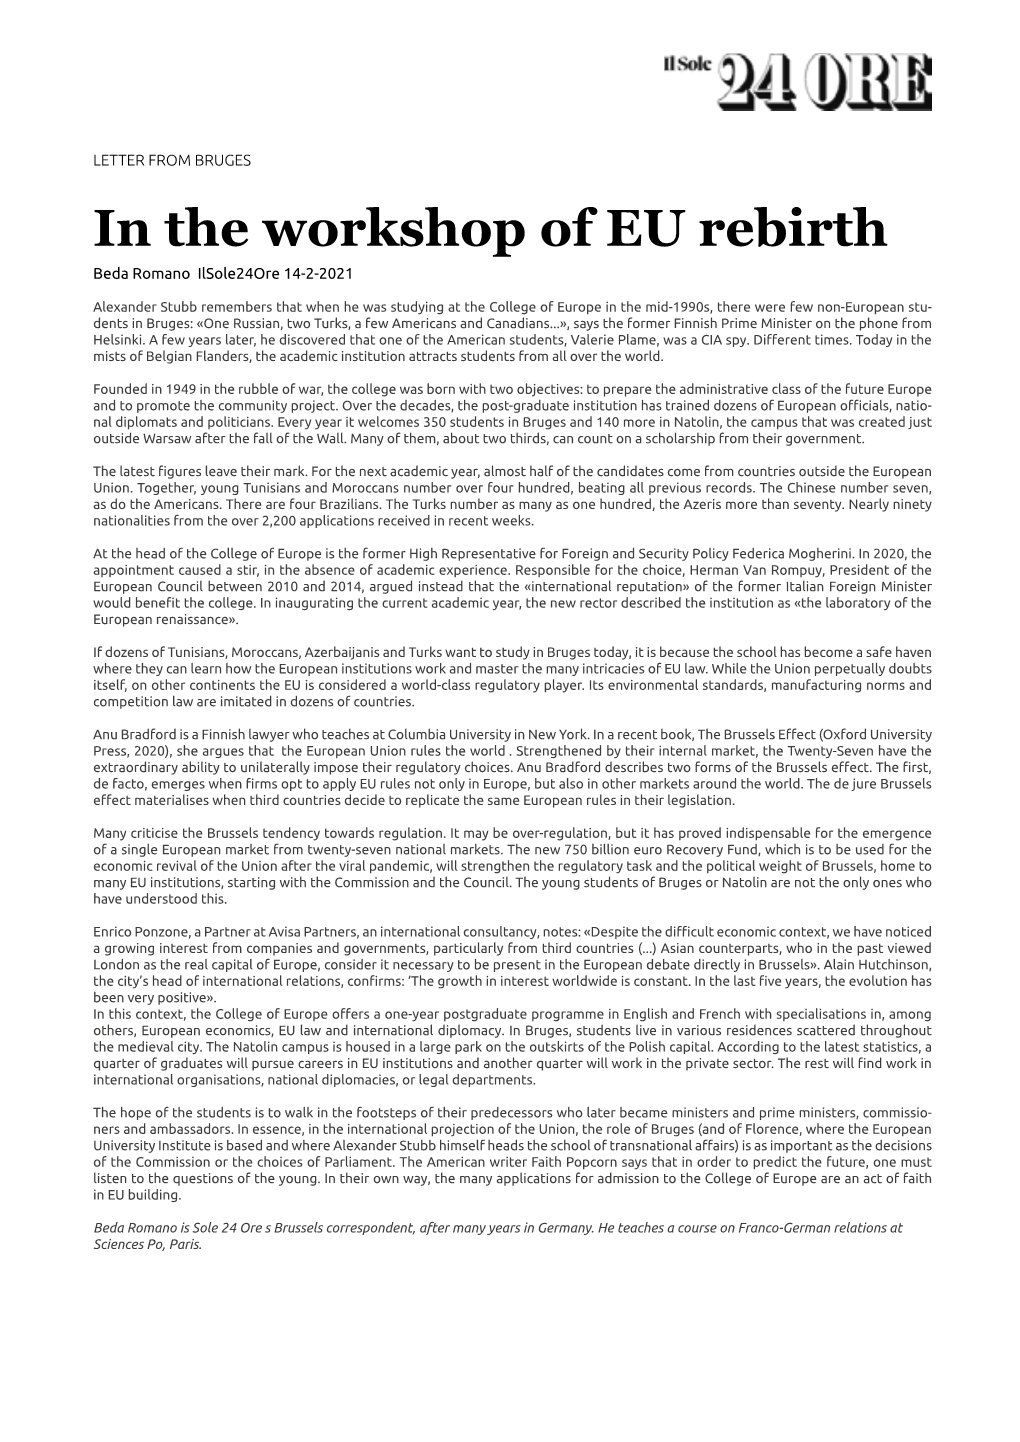 In the Workshop of EU Rebirth Beda Romano Ilsole24ore 14-2-2021